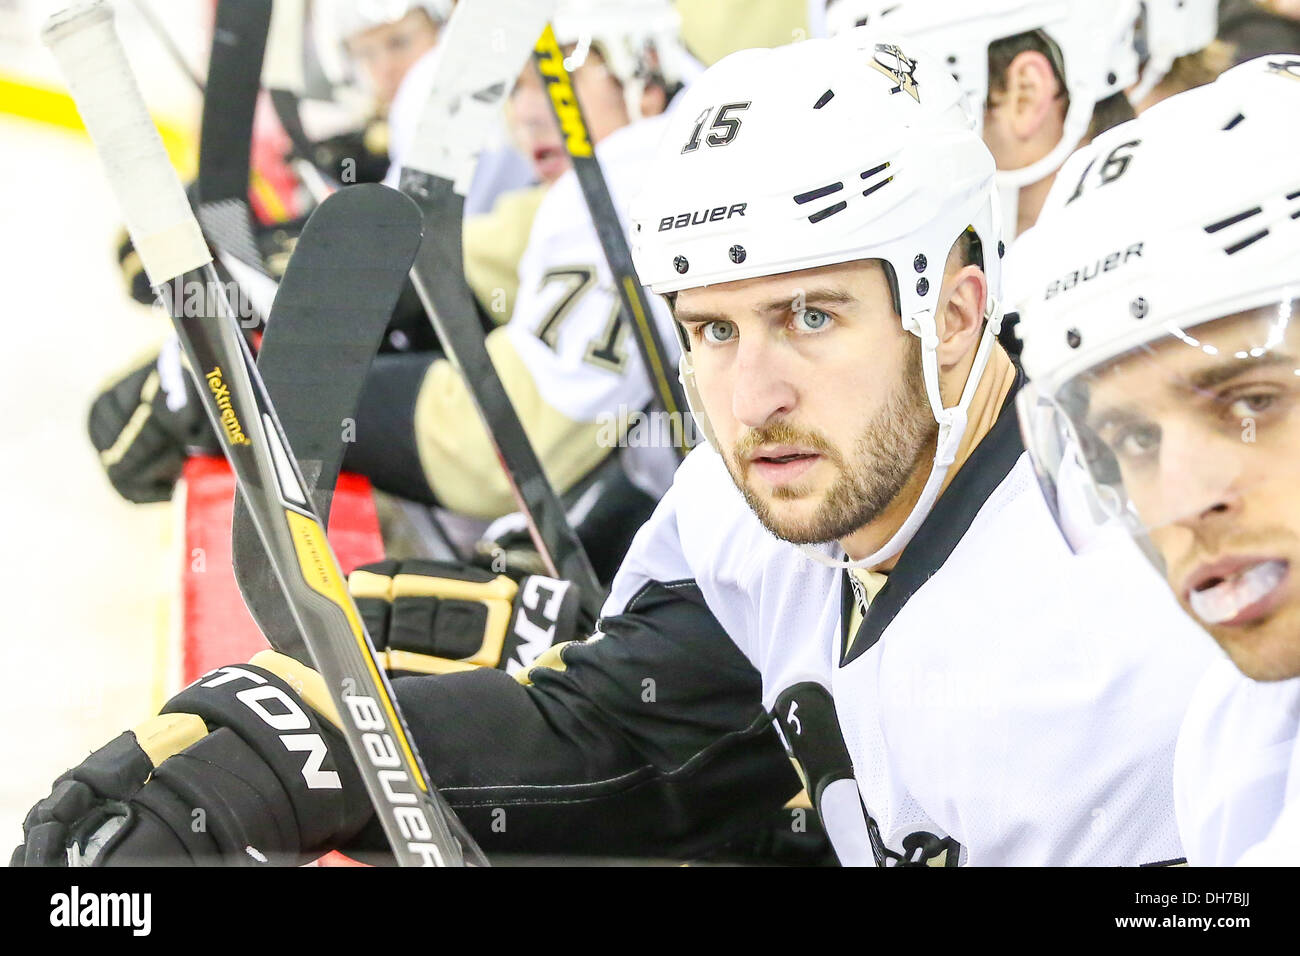 Les Penguins de Pittsburgh Center Tanner Glass (15) au cours de la saison LNH 2013-2014 Banque D'Images